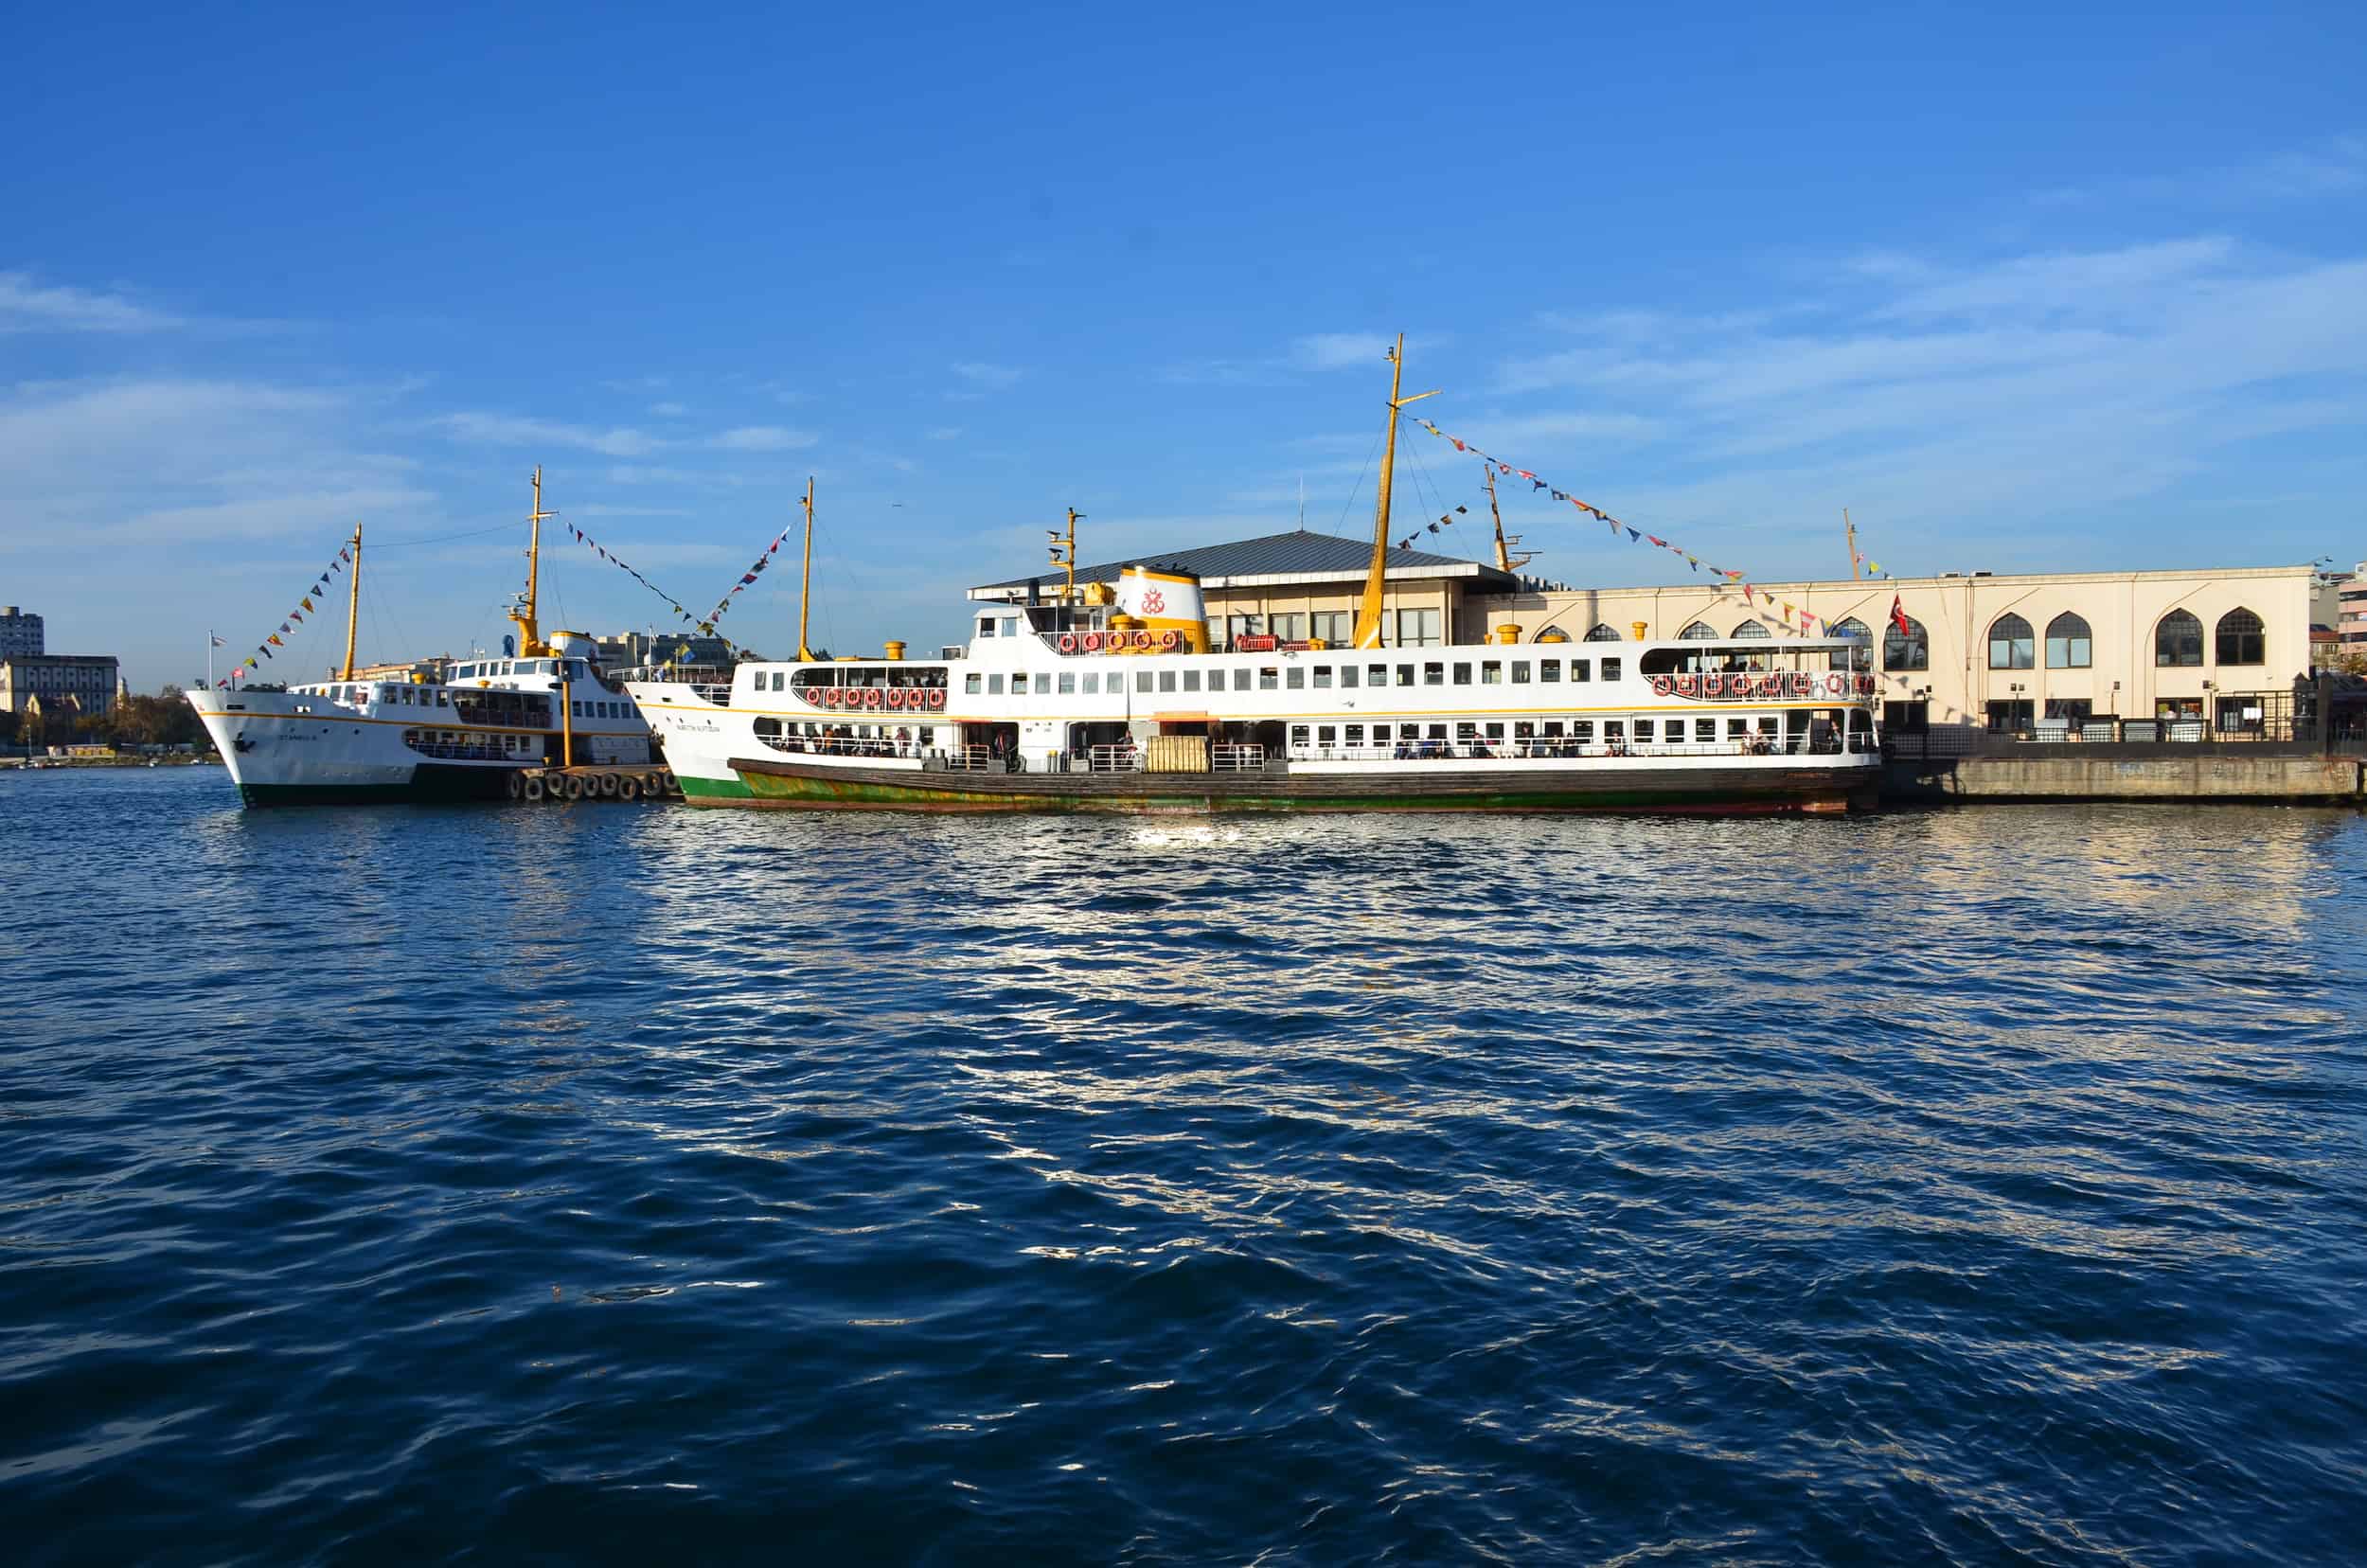 Kadıköy ferry terminal on the Istanbul public transportation system, Turkey